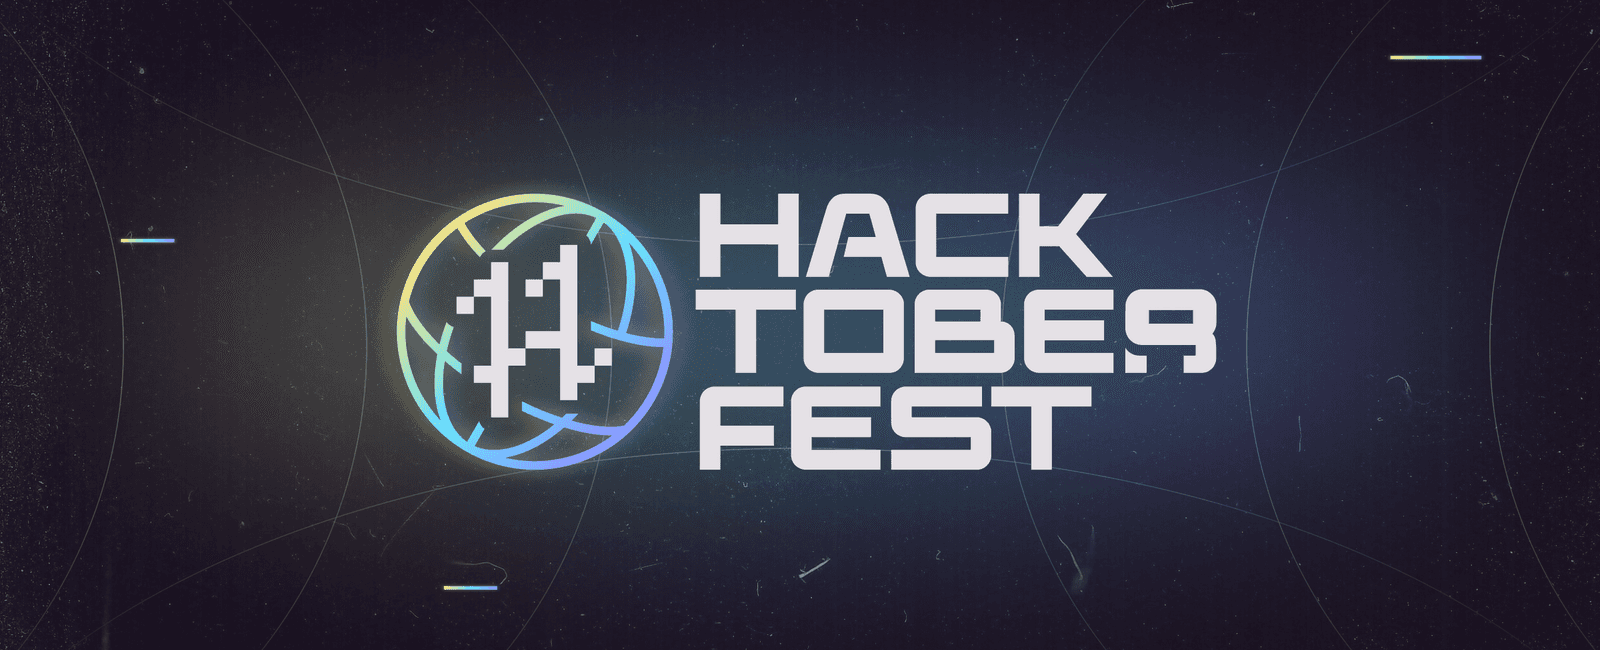 Hacktoberfest 2022 Is Here!